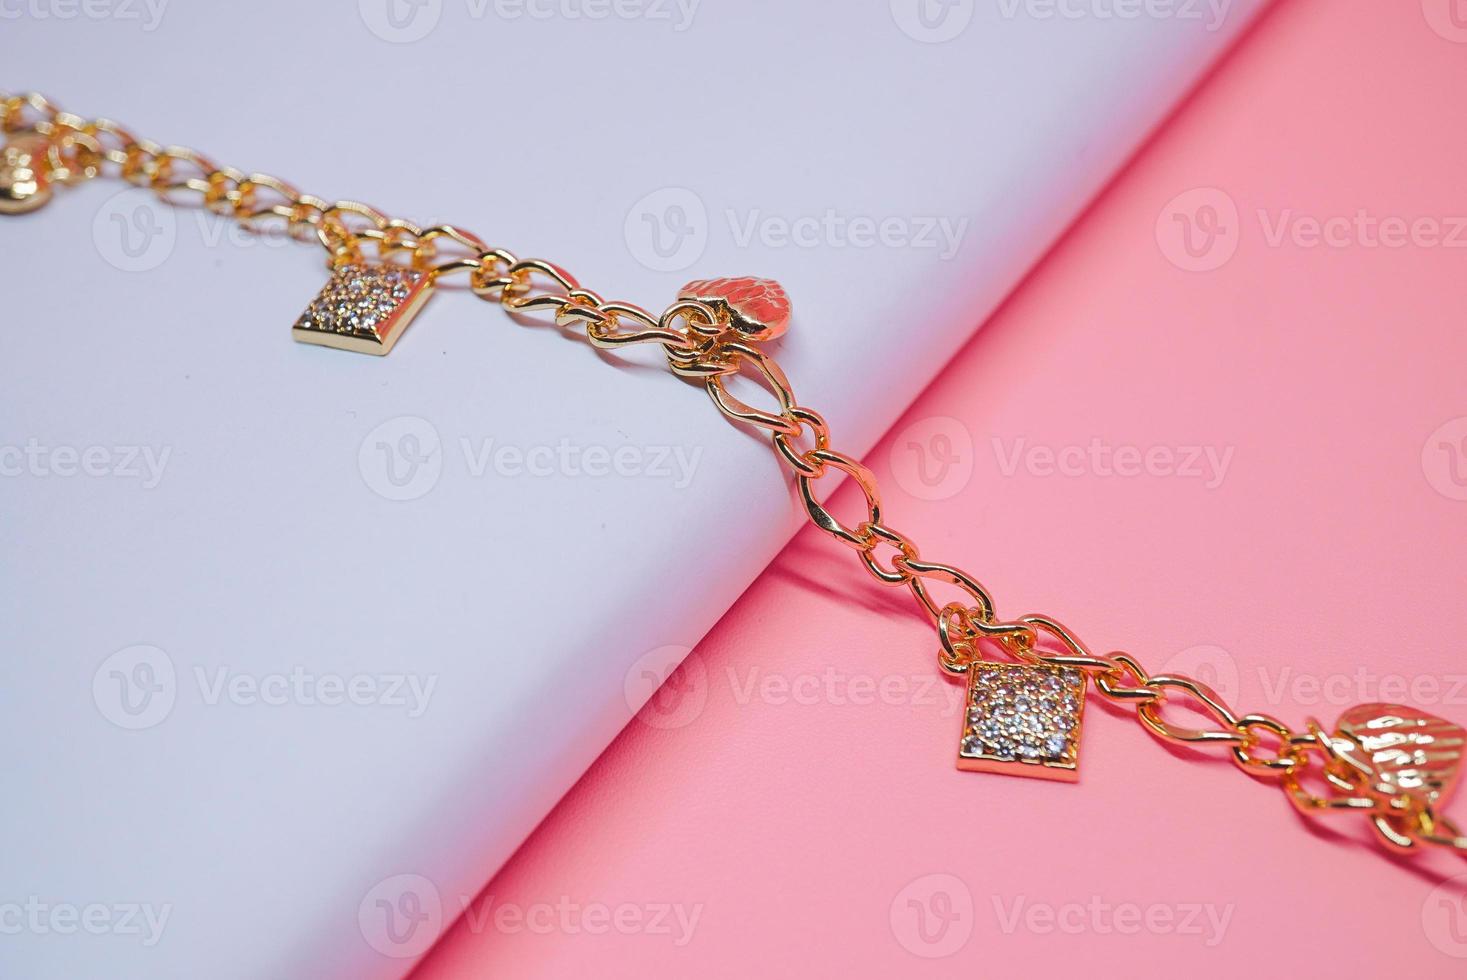 foto av ett damarmband med ett rutigt mönster och ett kärleksmotiv på en rosa bakgrund